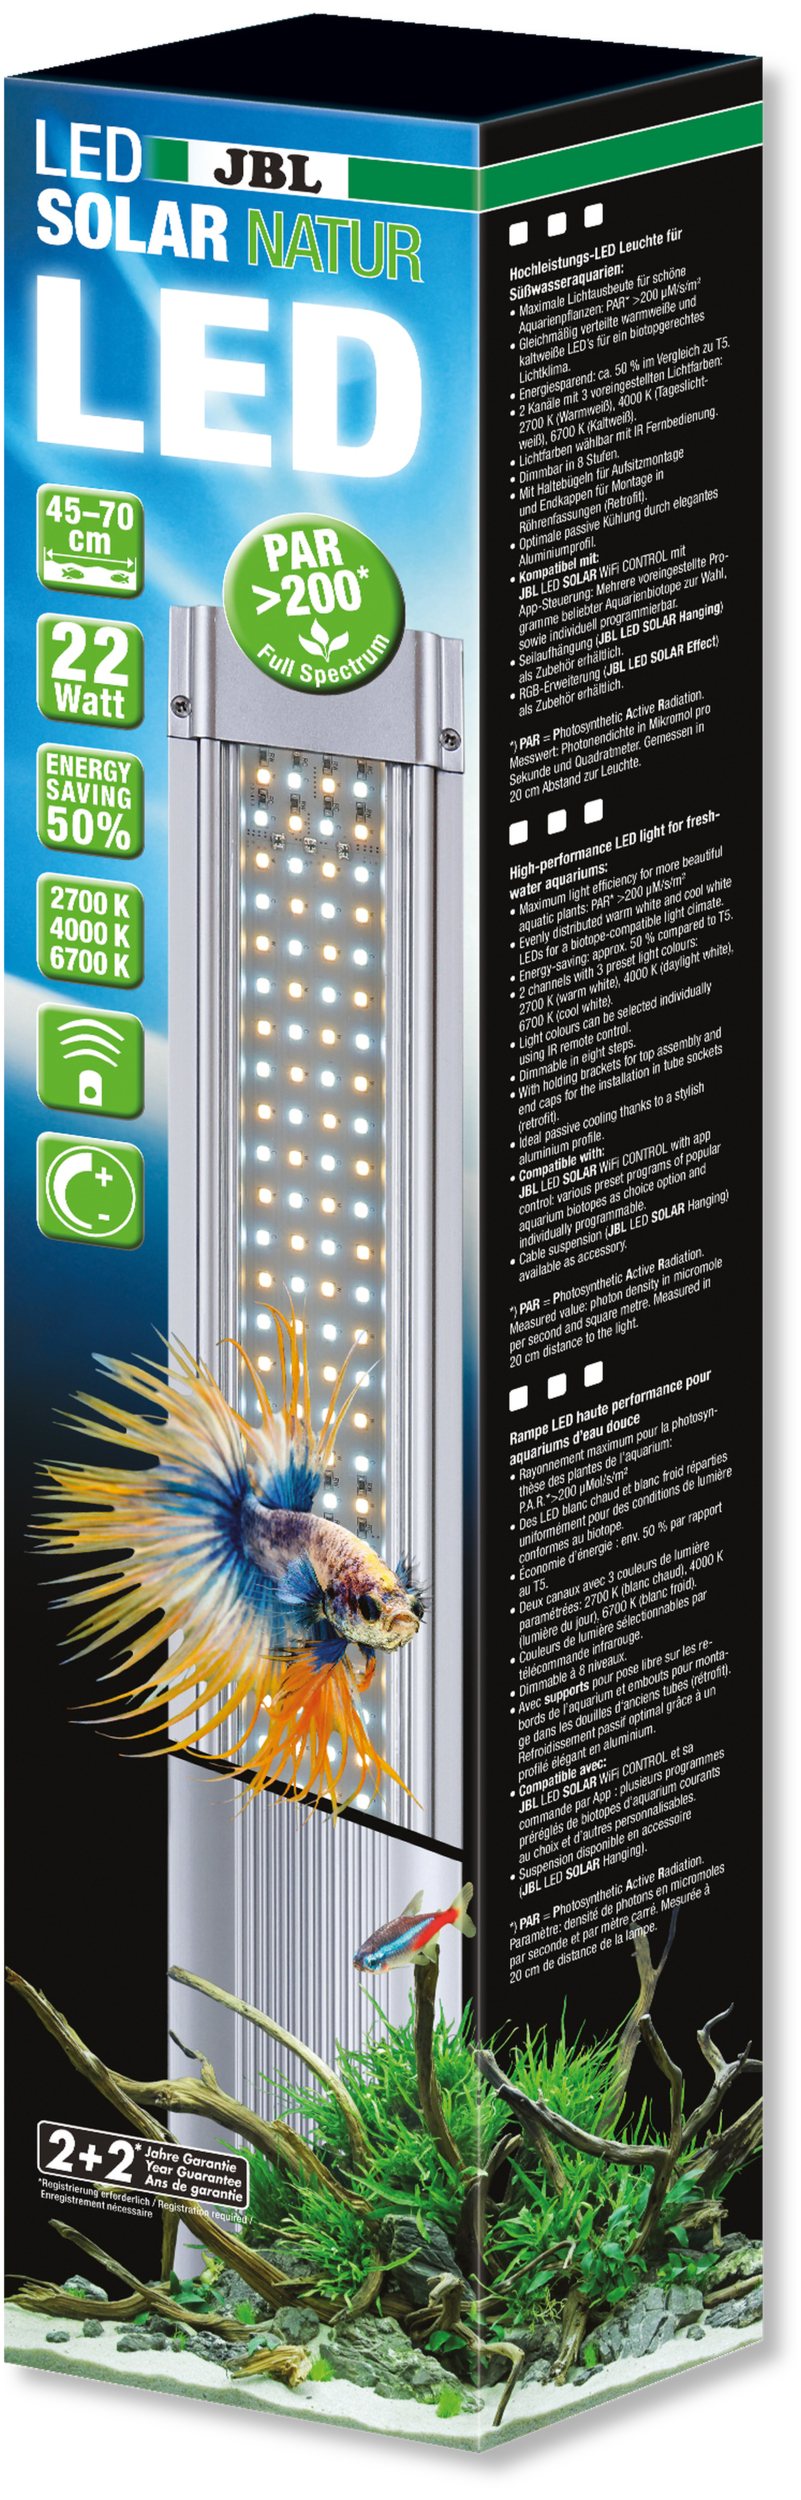 JBL LED Solar Natur 22W rampe aquarium Eau douce de 45 à 70 cm ou remplace tube T5 et T8